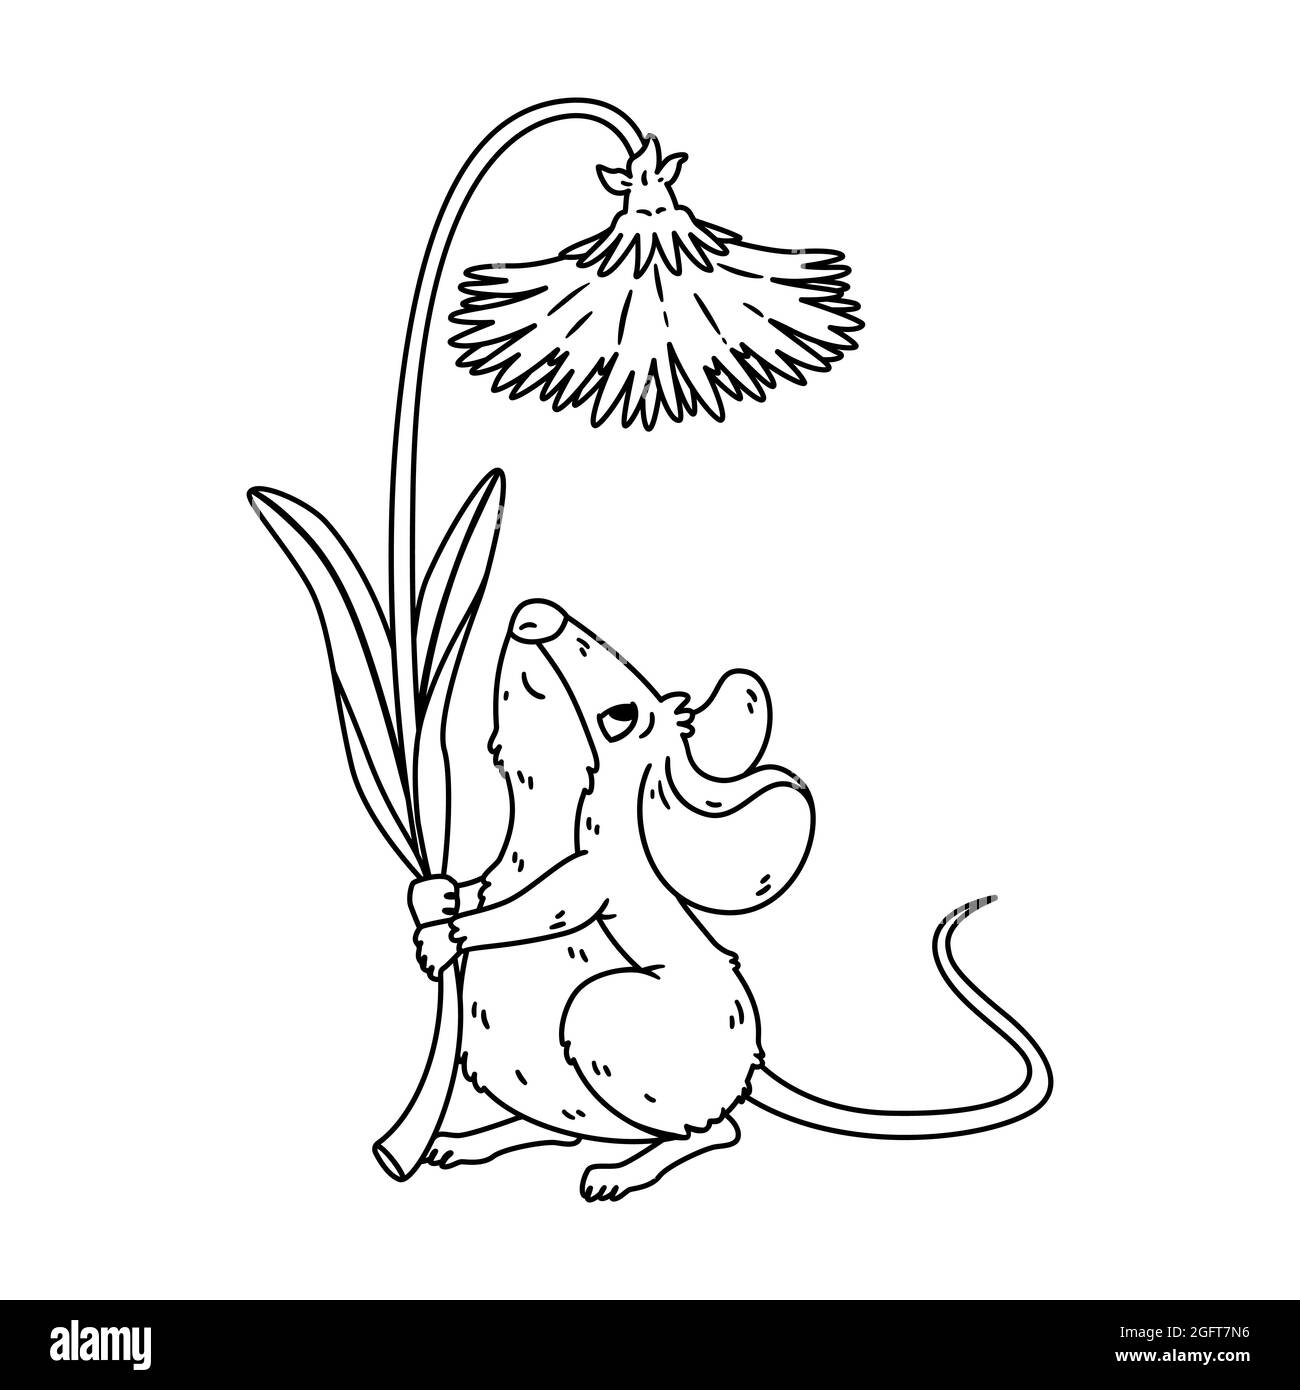 Piccolo bosco mouse tenere dente di leone. Vole prato con fiore. Fiore di mantenimento del ratto. Illustrazione isolata del carattere vettoriale su sfondo bianco. Colorazione Illustrazione Vettoriale